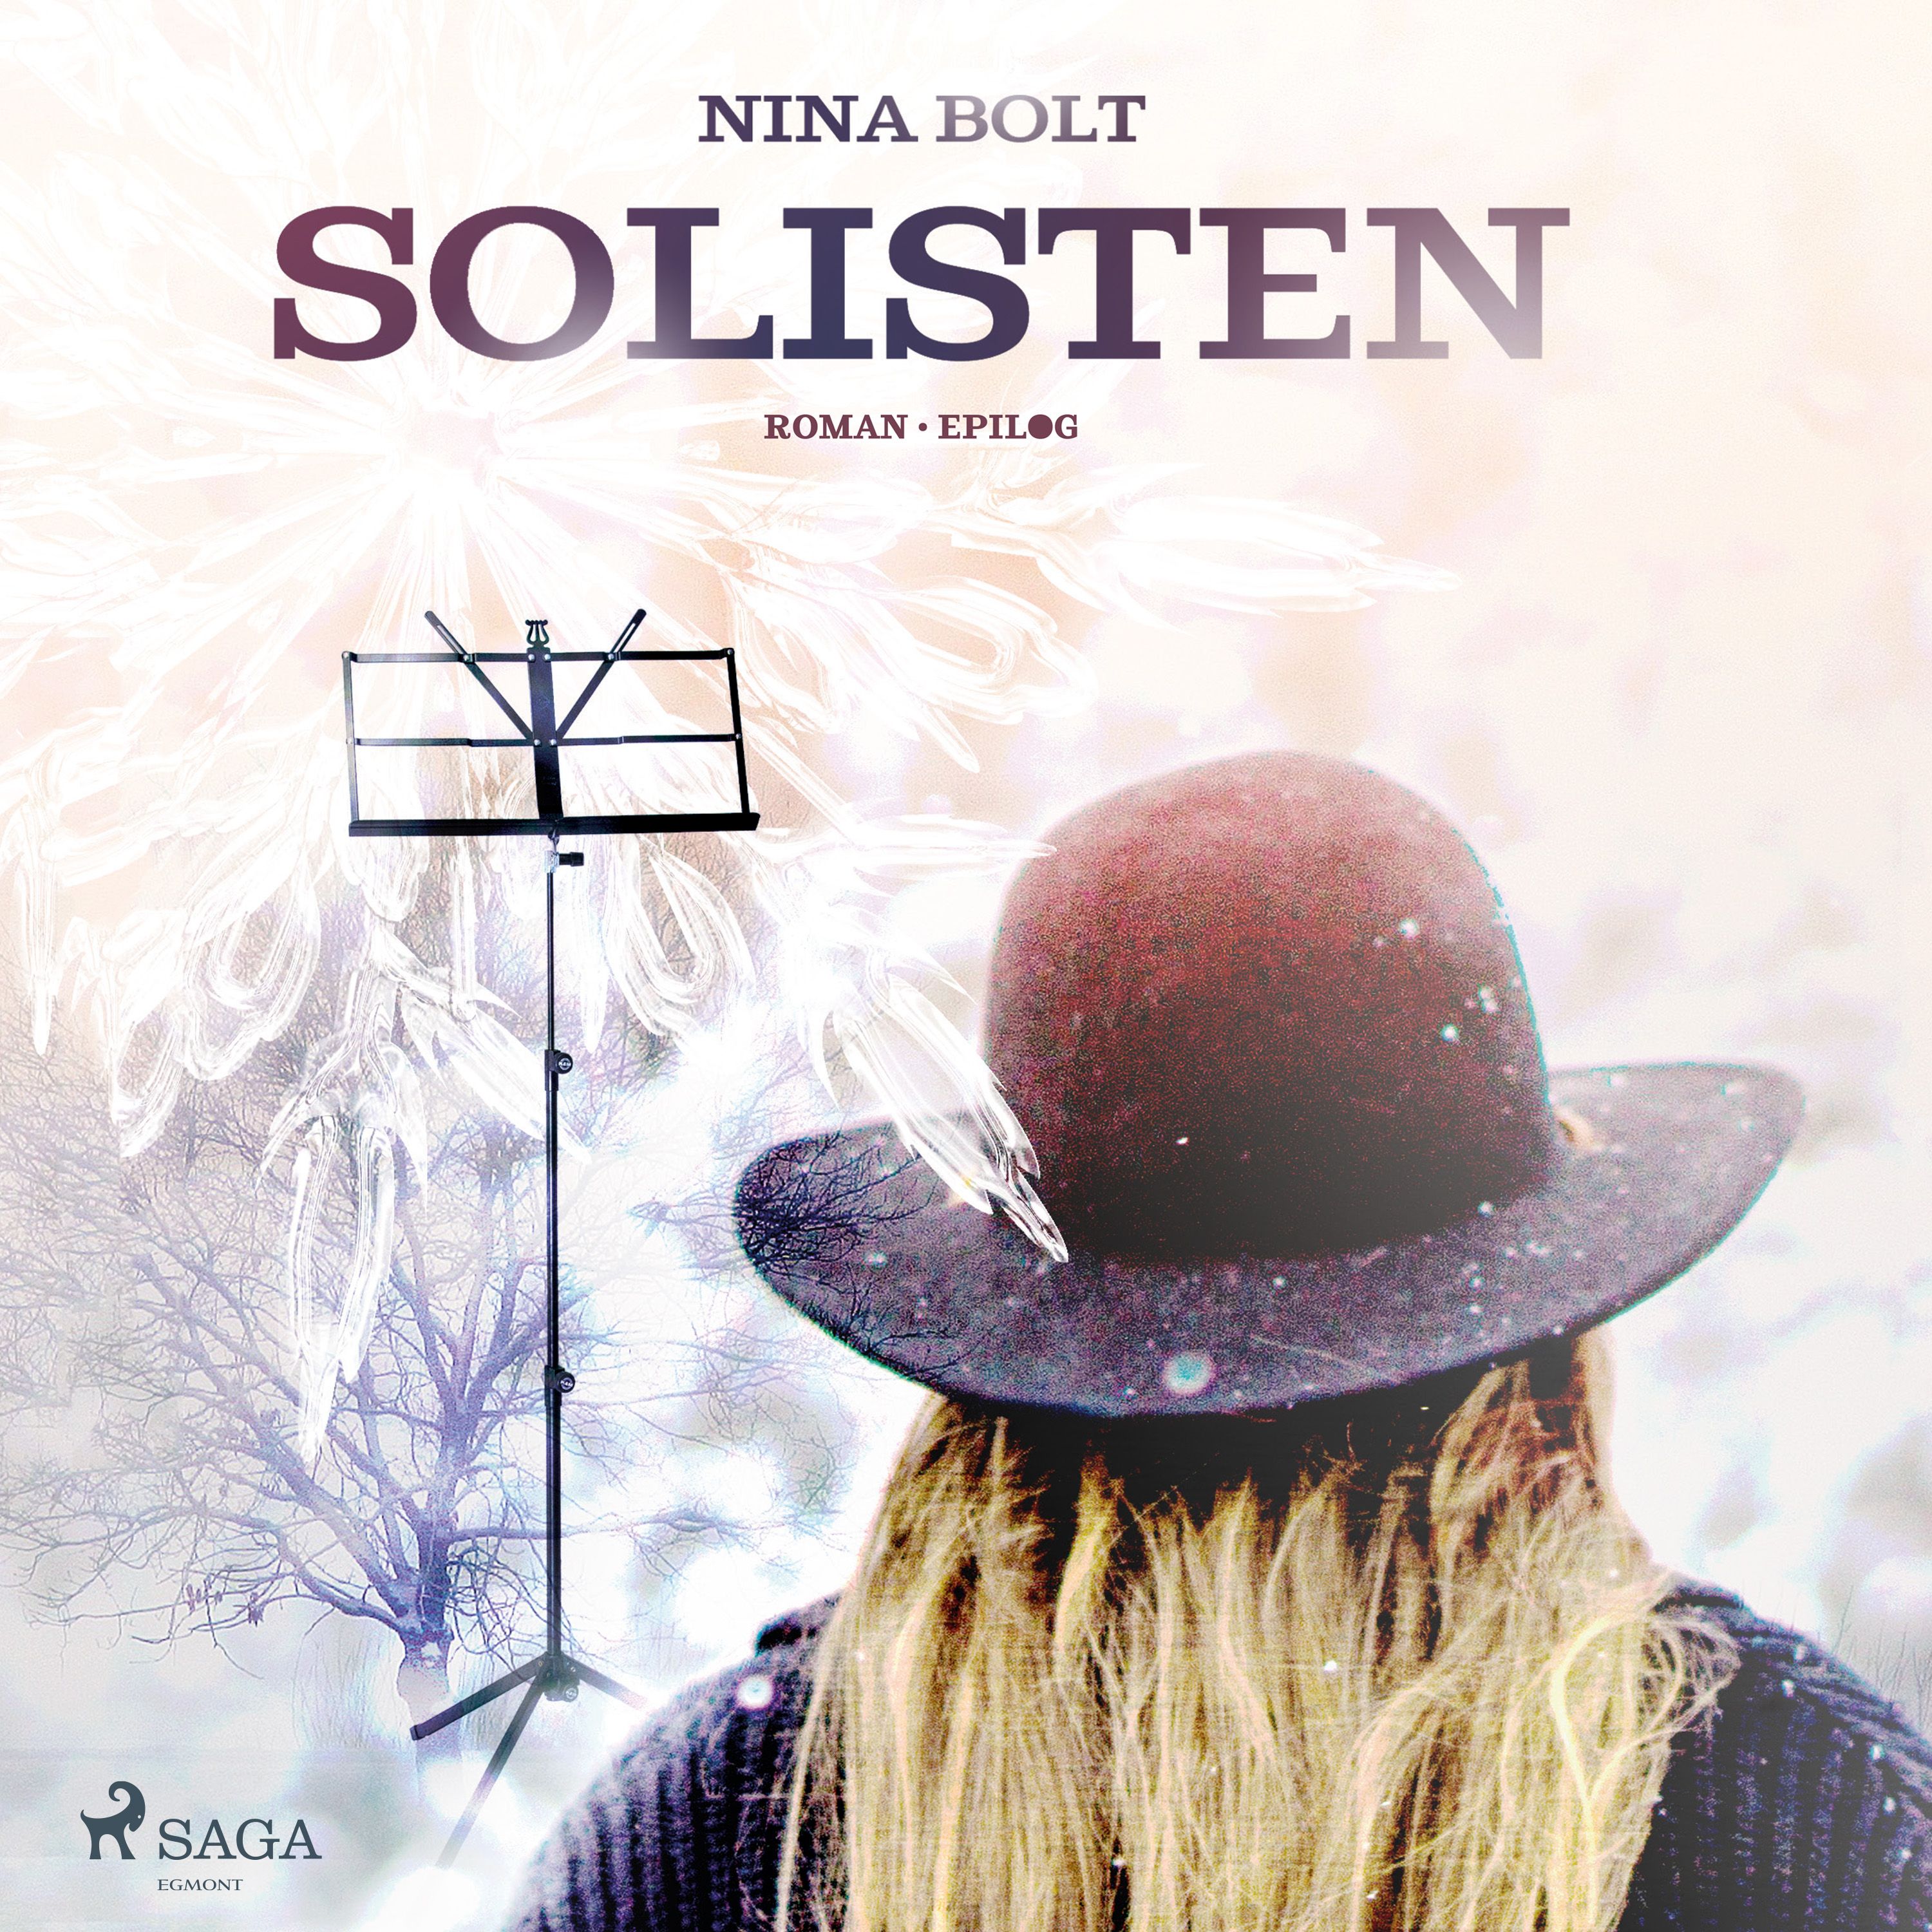 Solisten, audiobook by Epilog